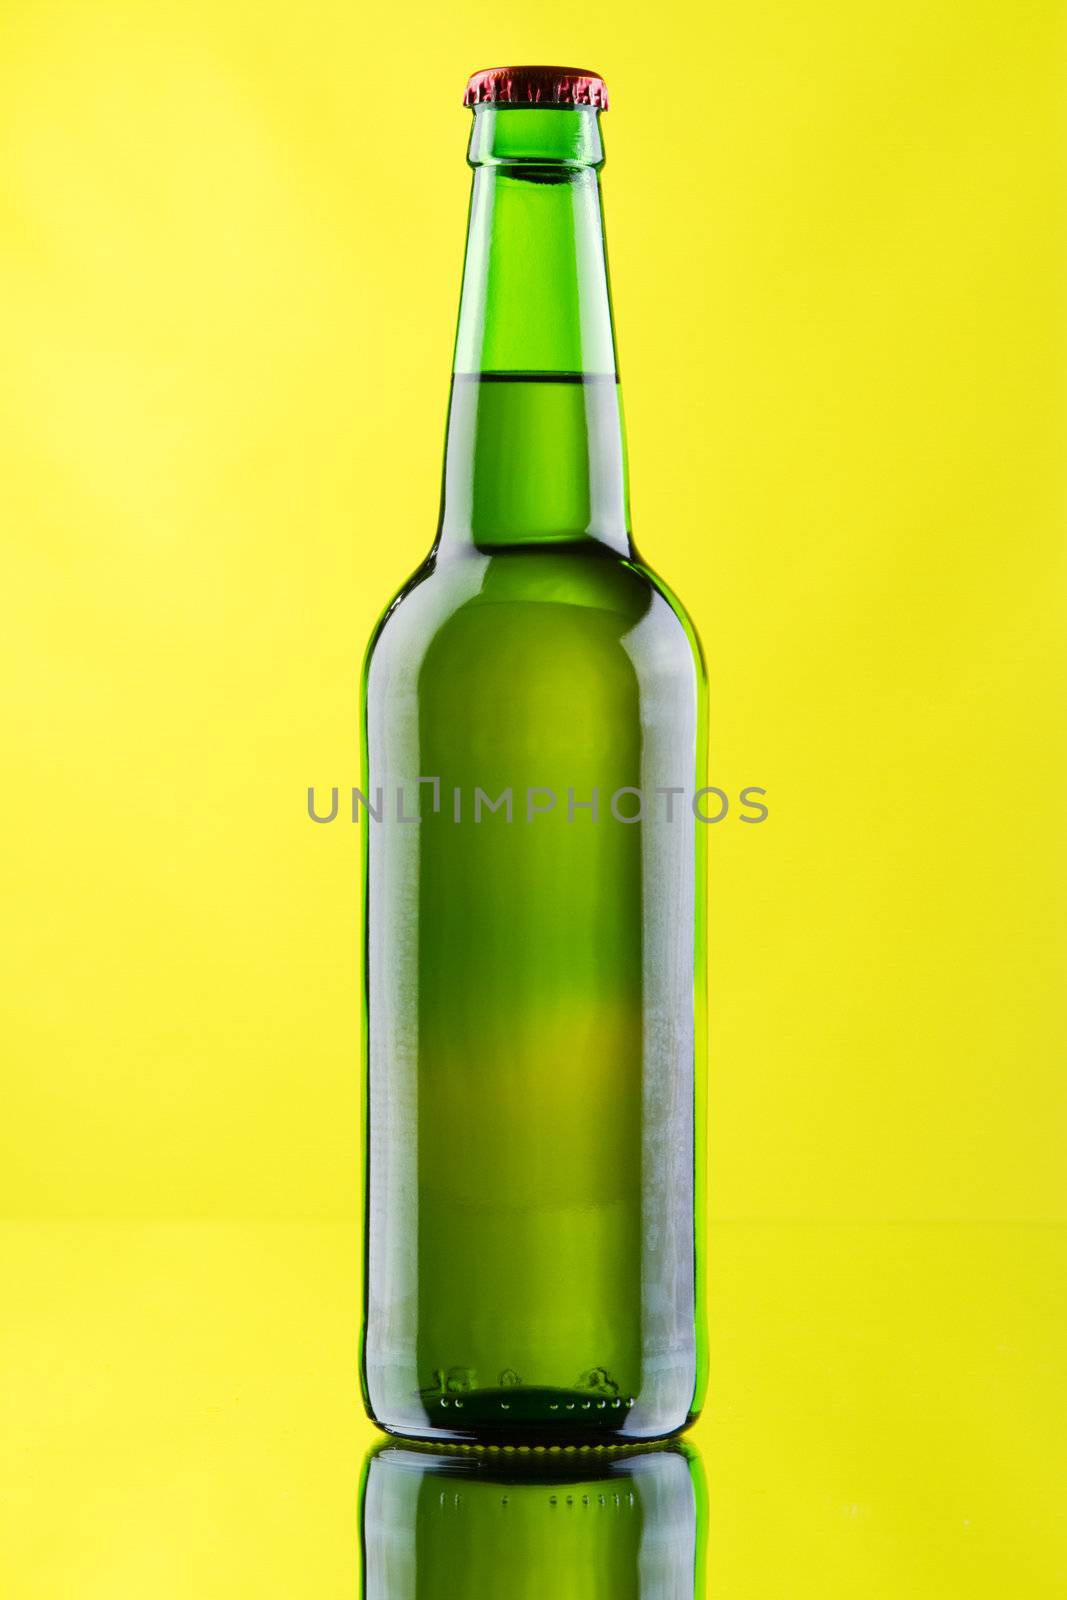 Beer mug and bottle on yellow background, studio photo